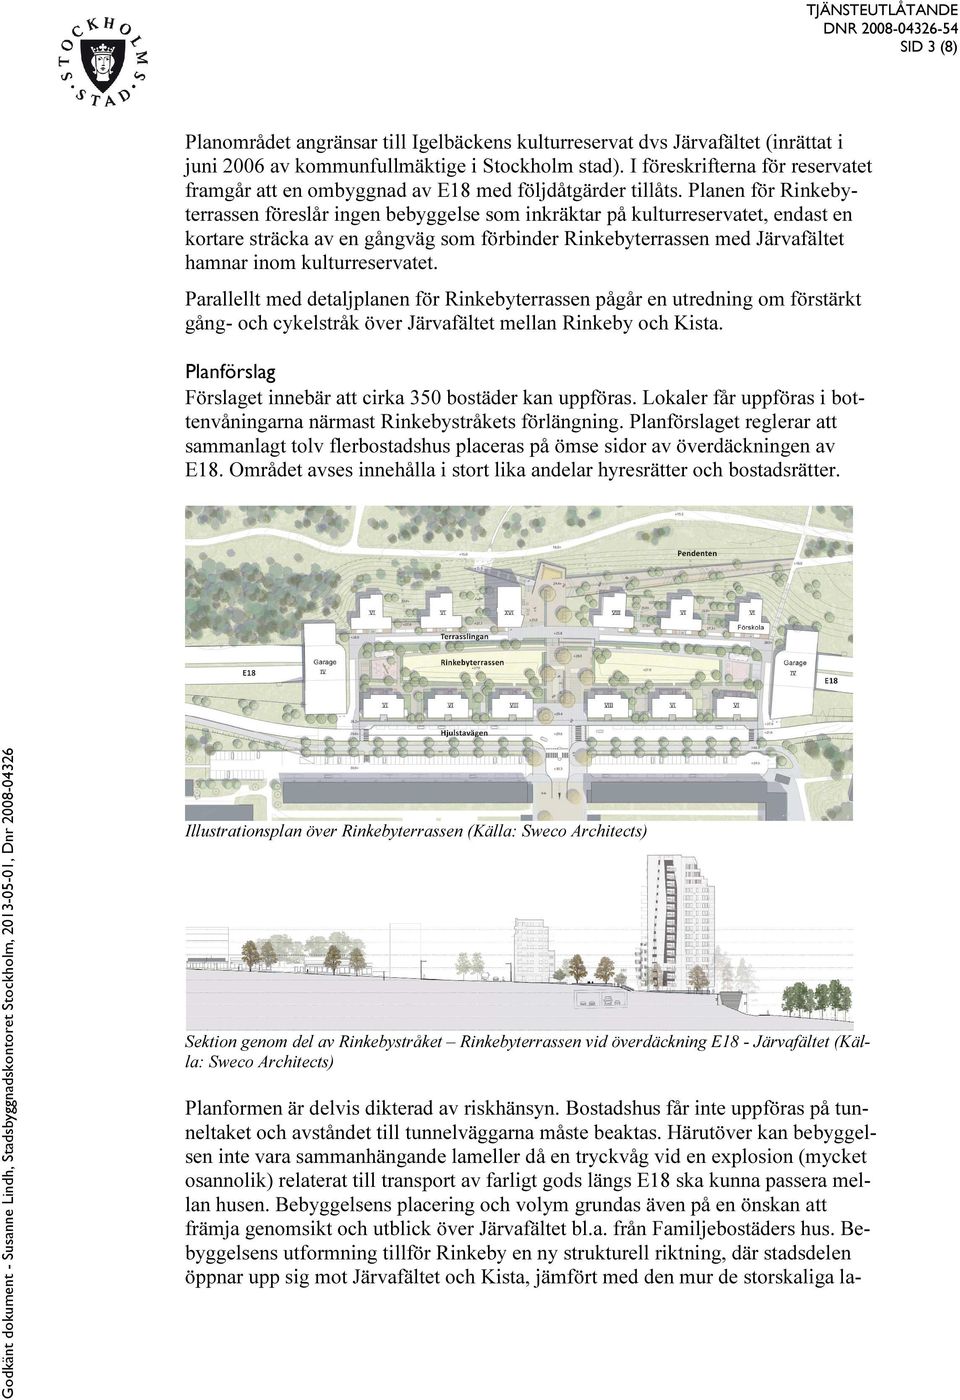 Planen för Rinkebyterrassen föreslår ingen bebyggelse som inkräktar på kulturreservatet, endast en kortare sträcka av en gångväg som förbinder Rinkebyterrassen med Järvafältet hamnar inom